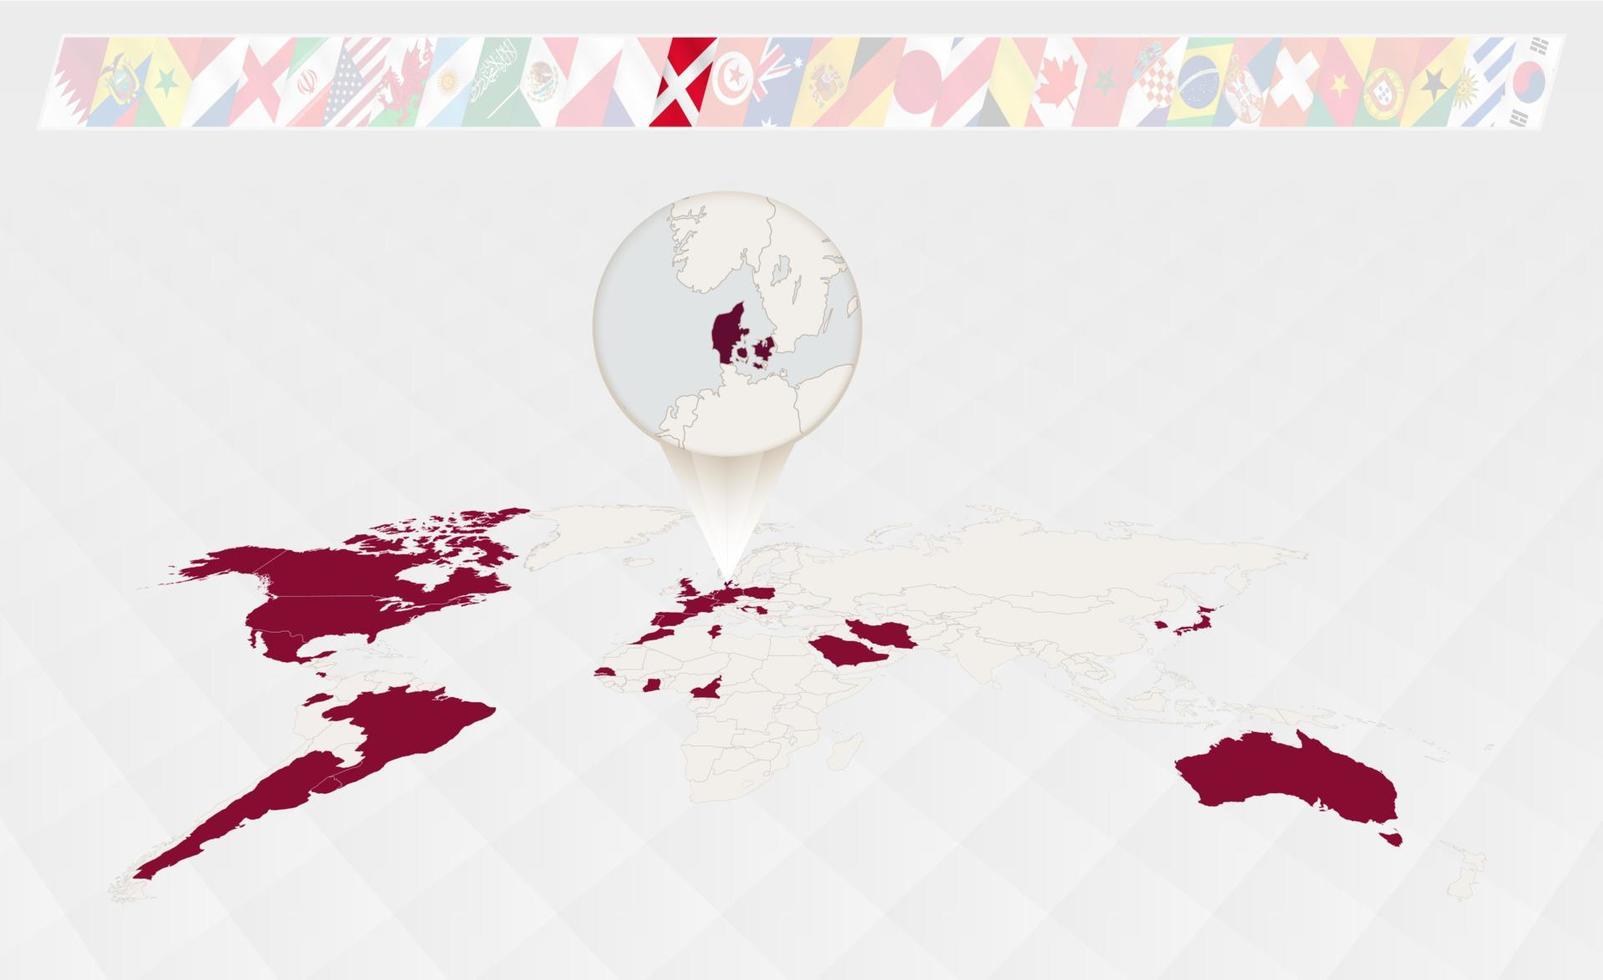 förstora de Karta av Danmark vald på de perspektiv värld Karta, infographics handla om de deltagarna i fotboll turnering. vektor